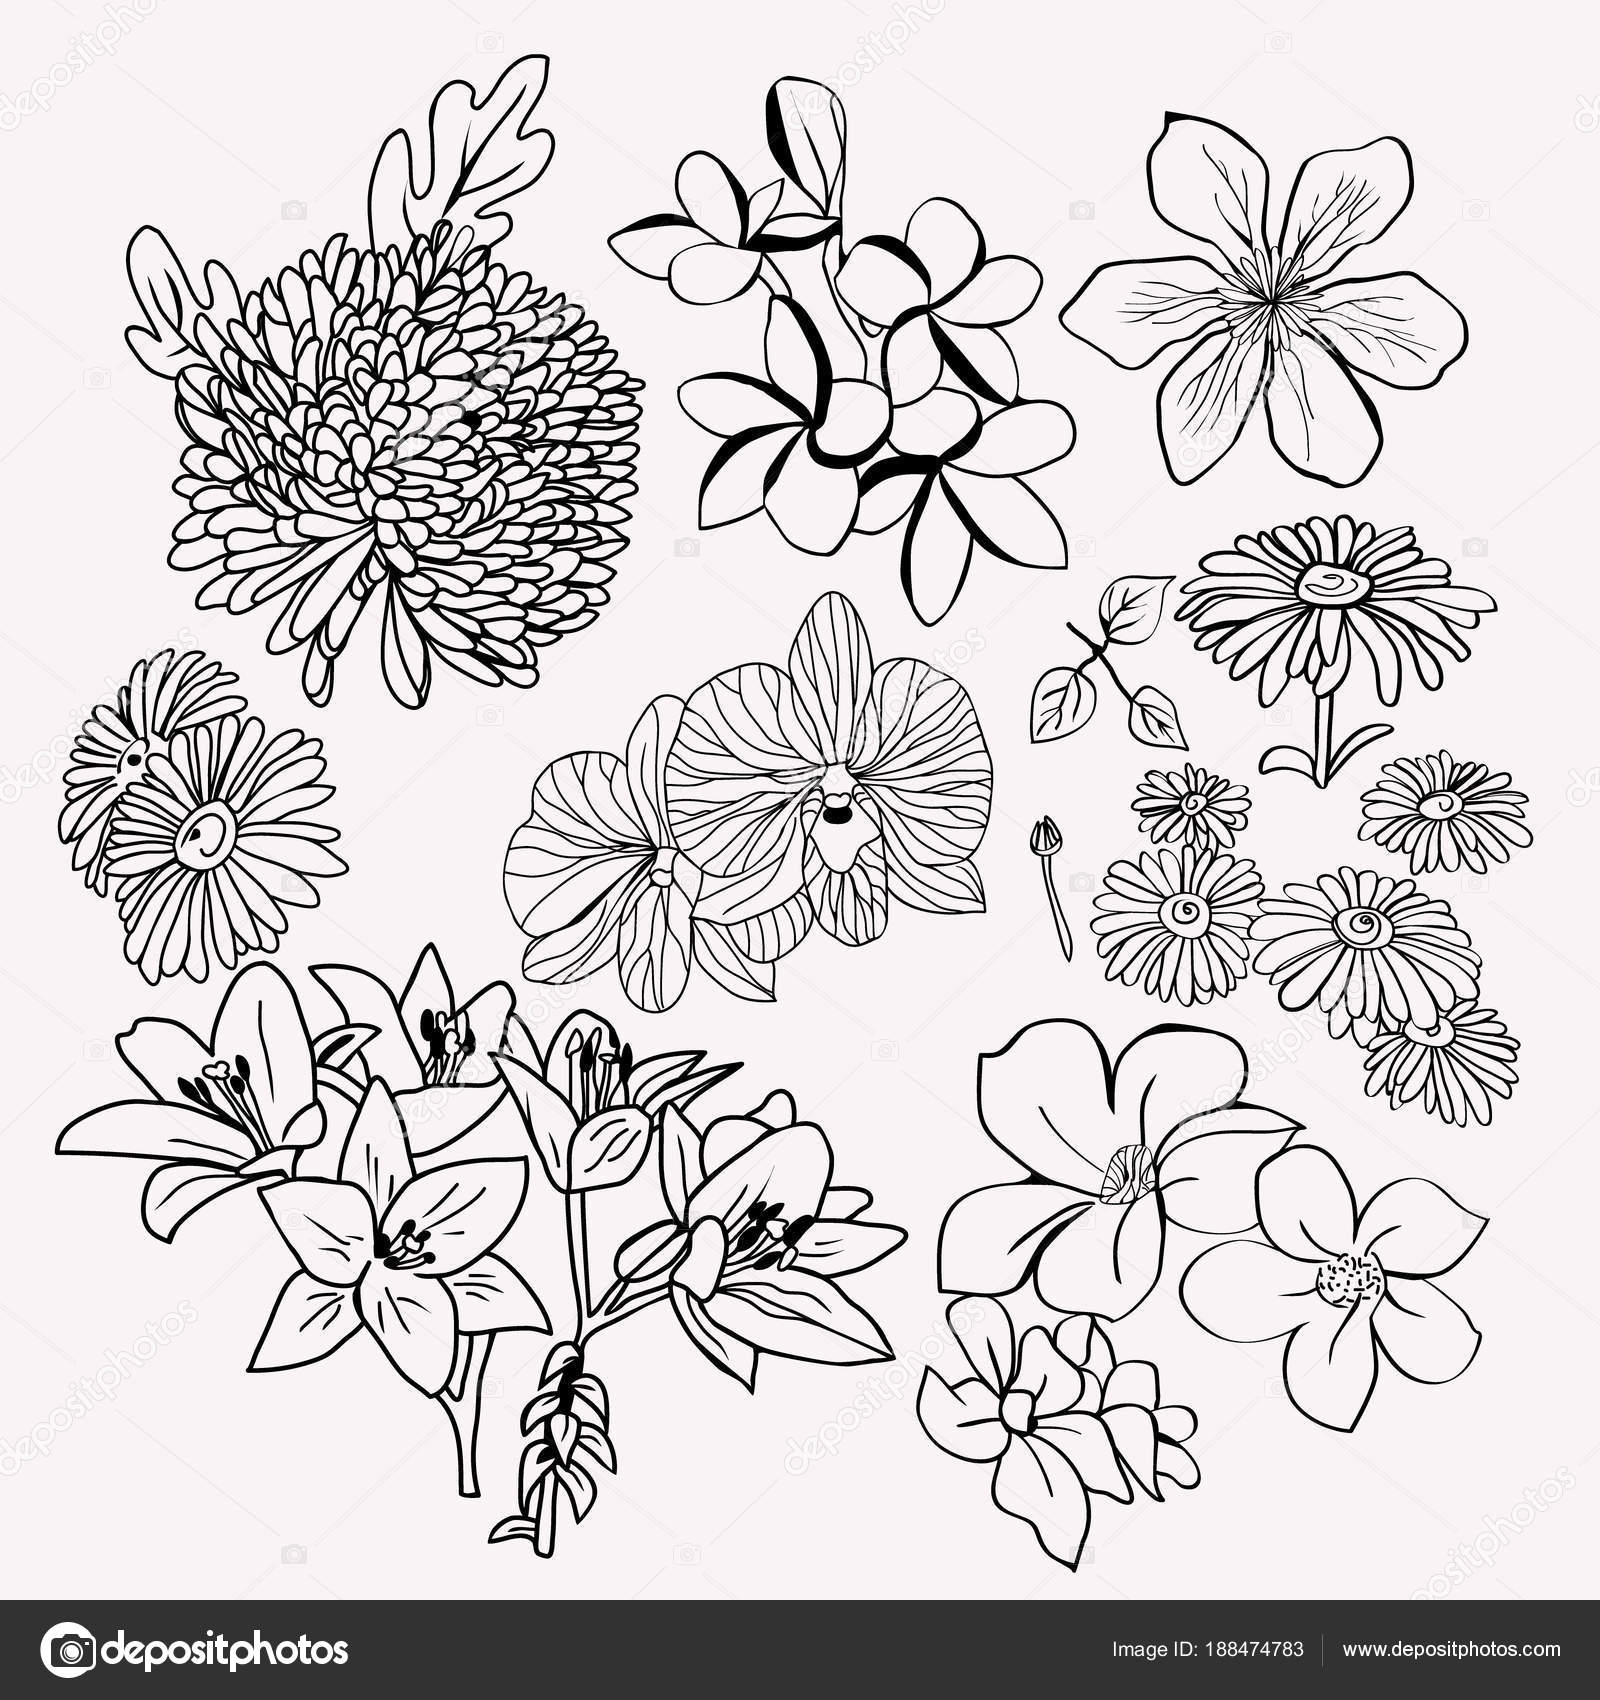 ベストモノクロ 花 イラスト 最高の花の画像